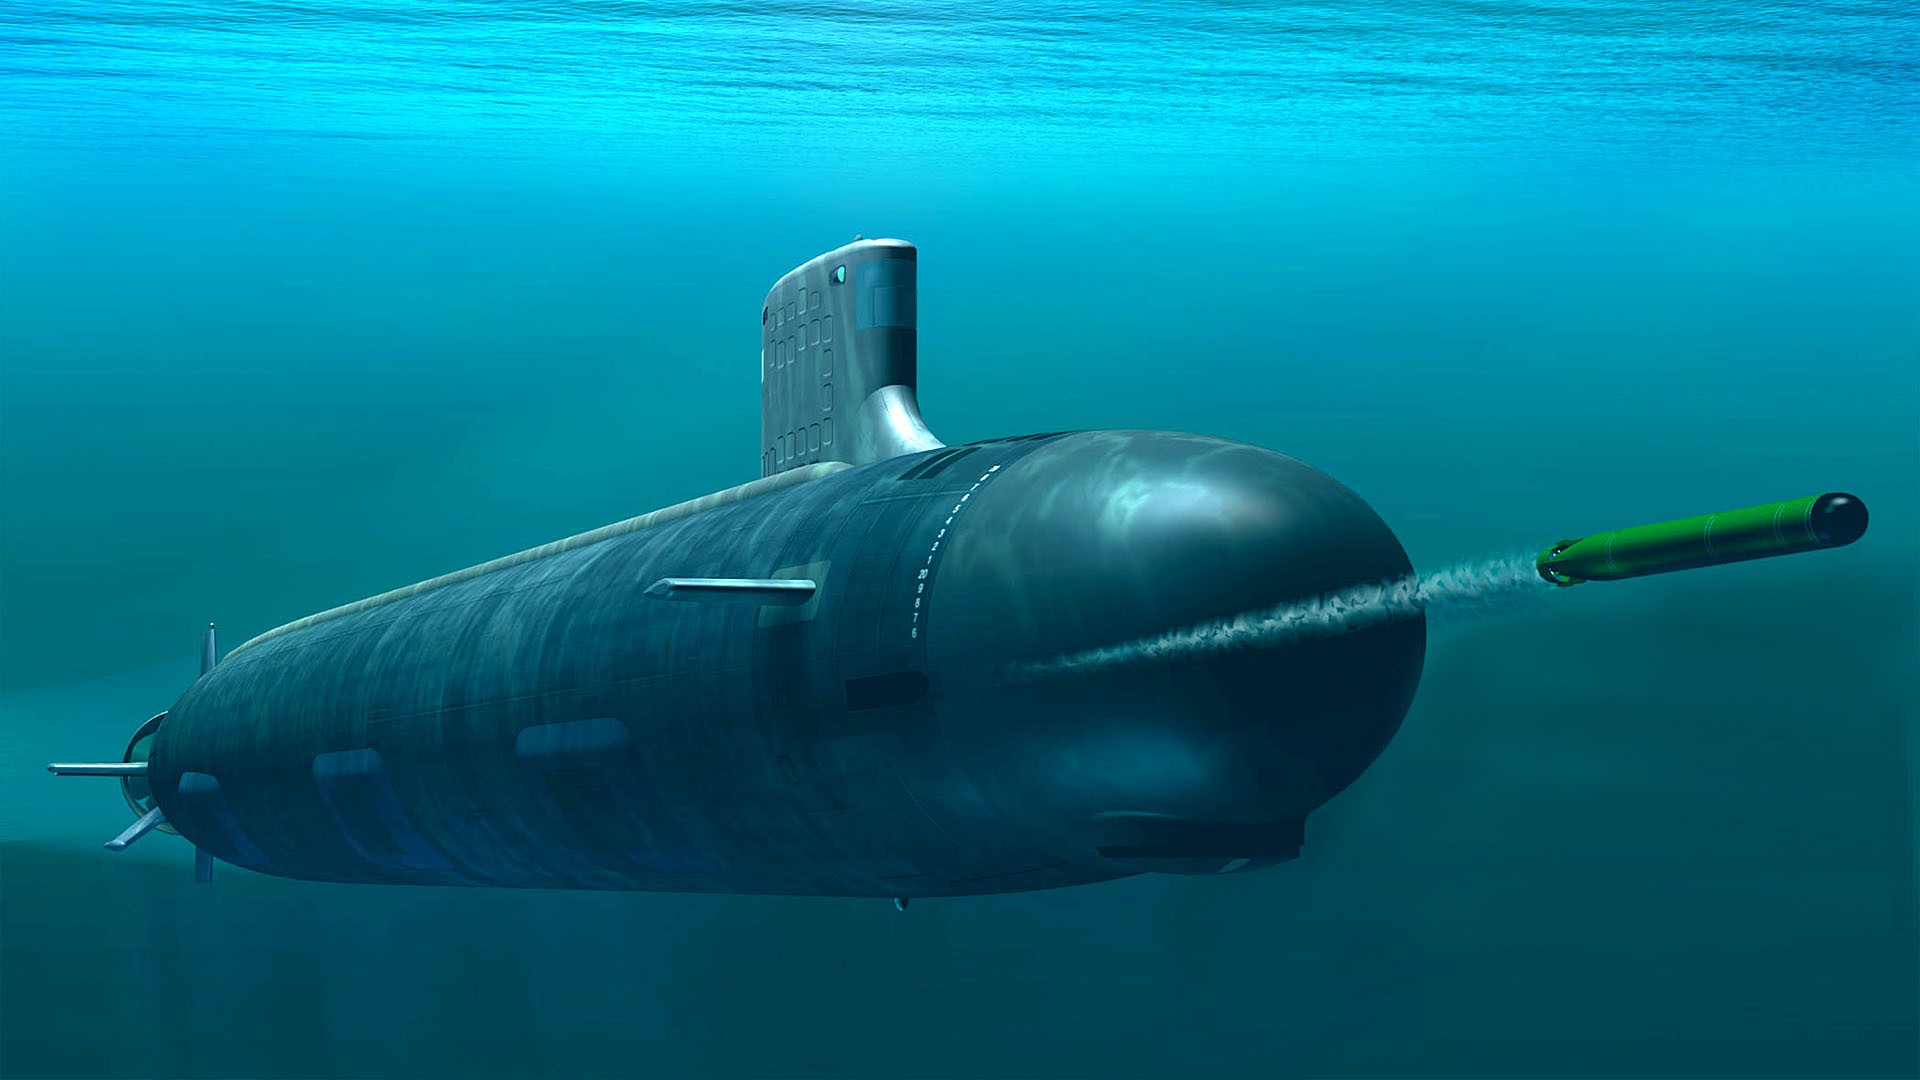 Submarine Torpedo Military Vehicle Underwater 1920x1080